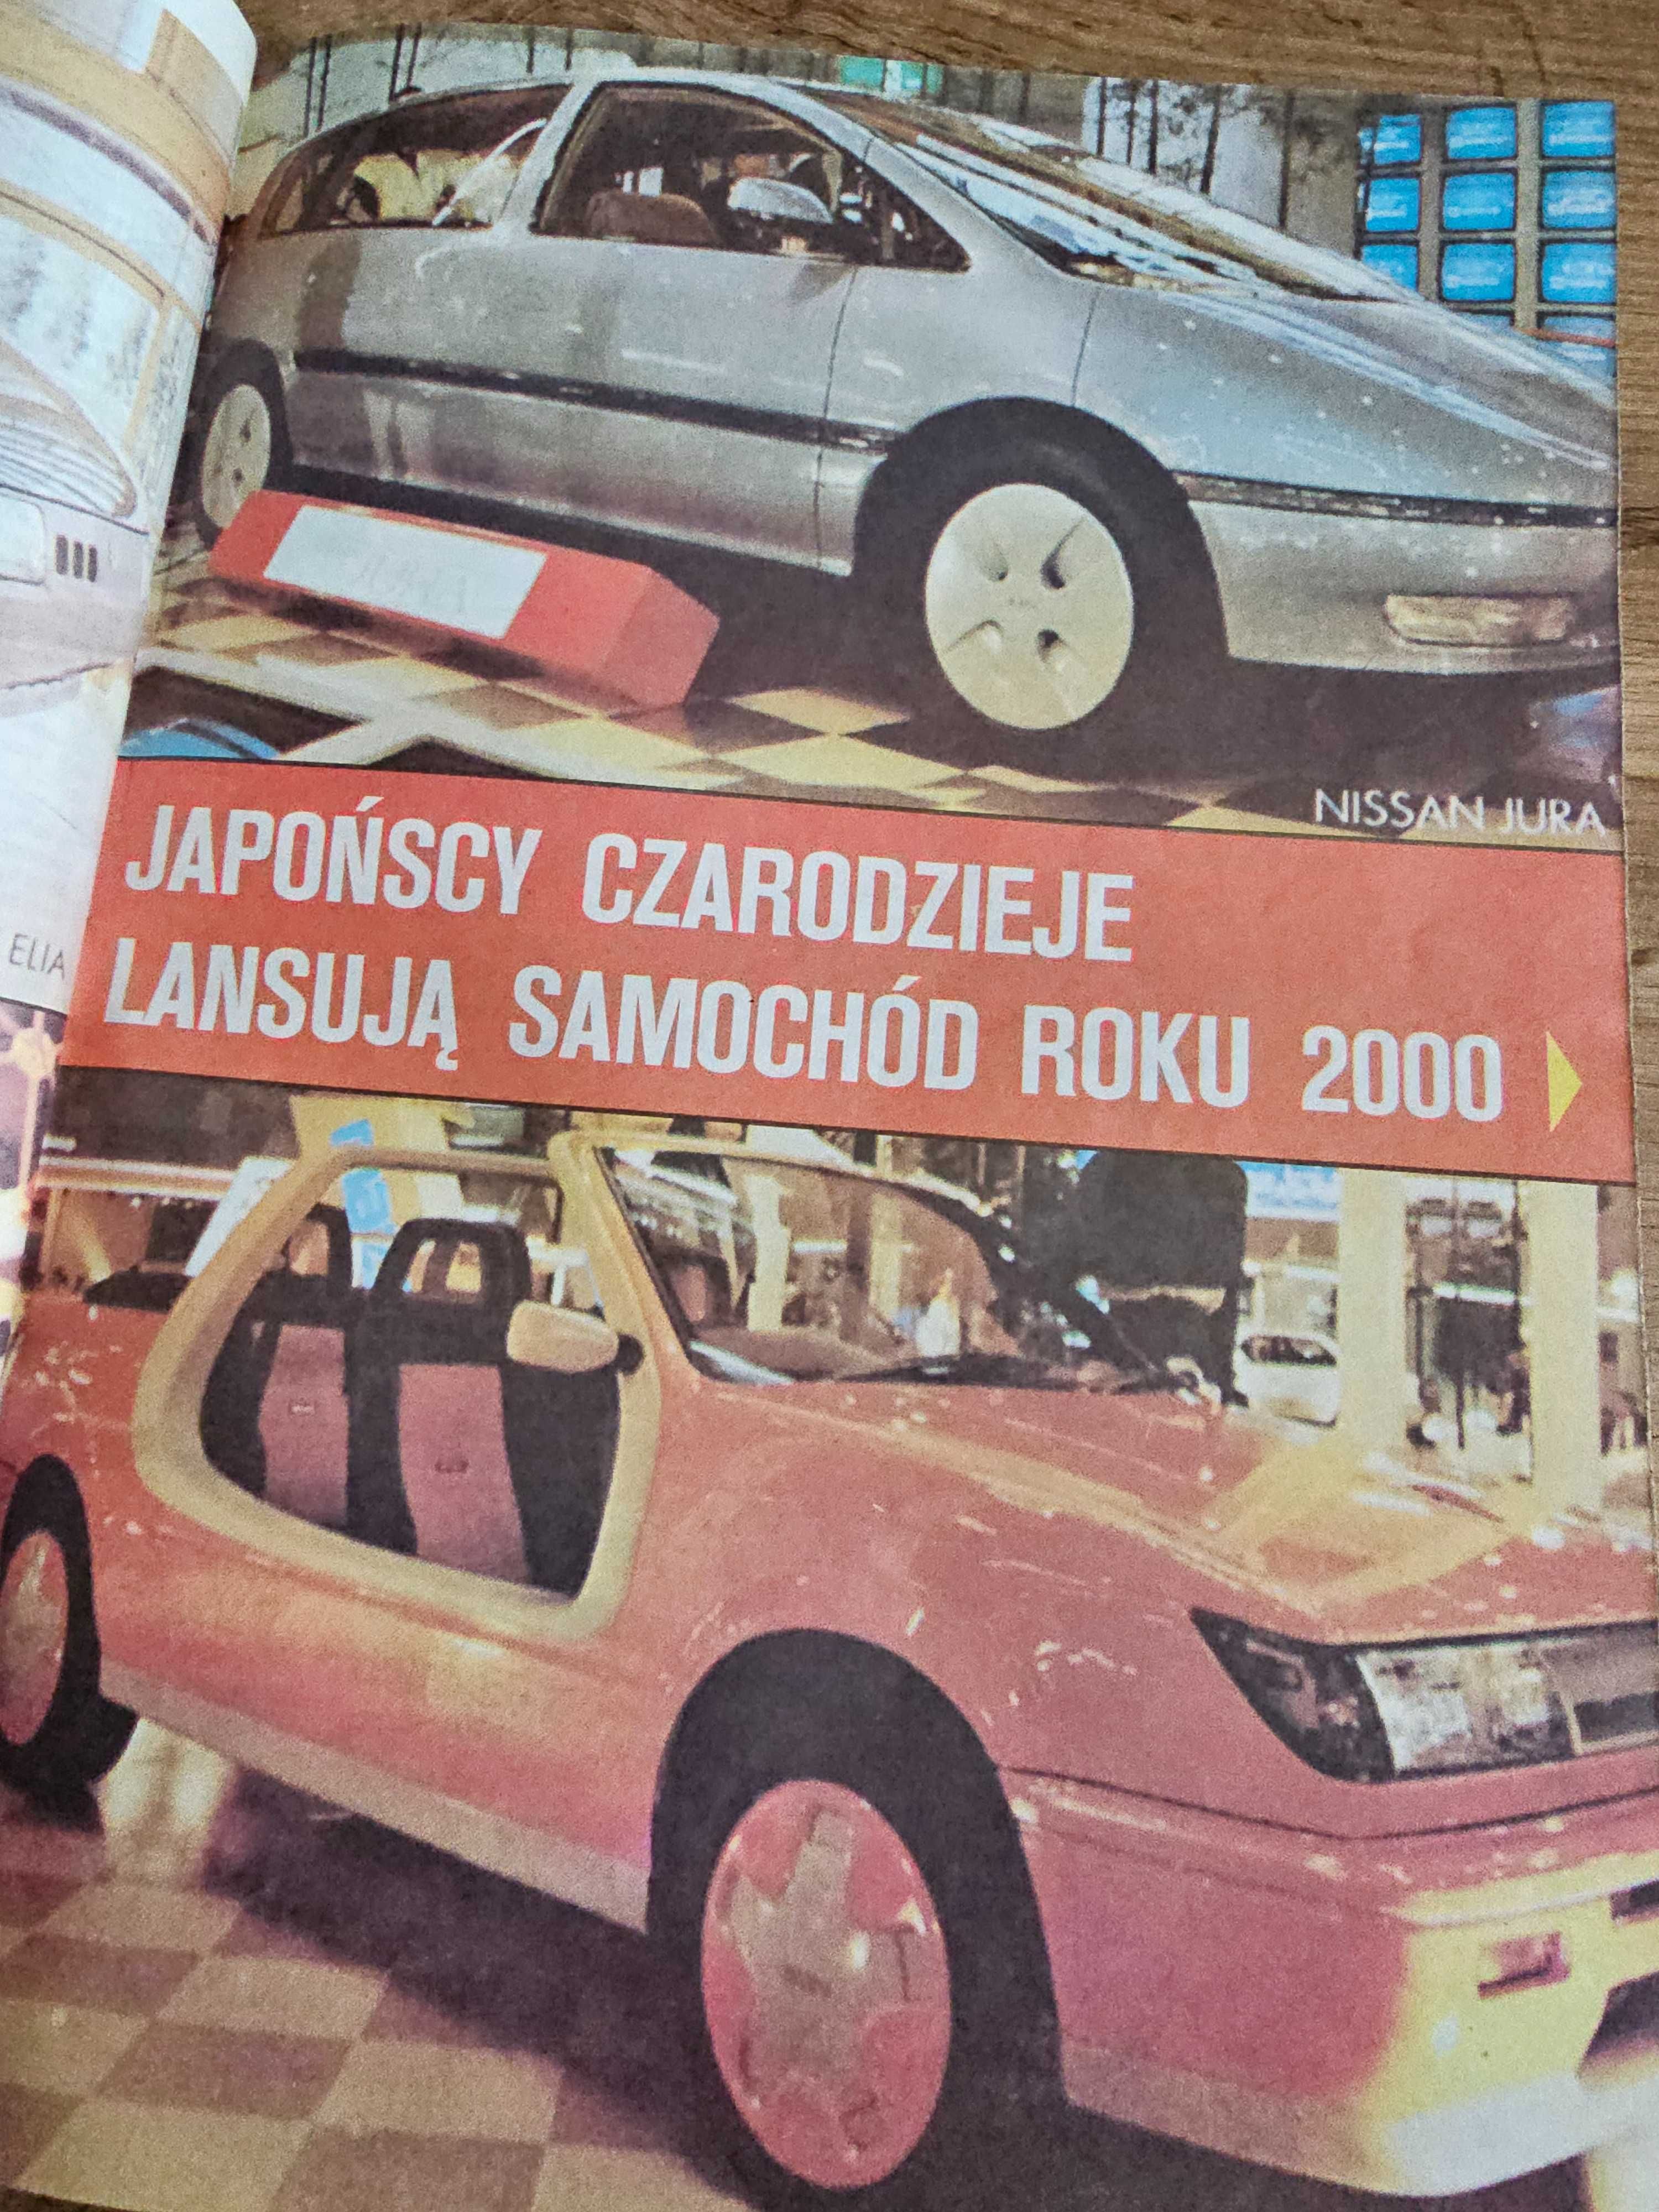 UNIKAT! Magazyn Poradniczo-Hobbistyczny PAN 4/1988 - polski Playboy